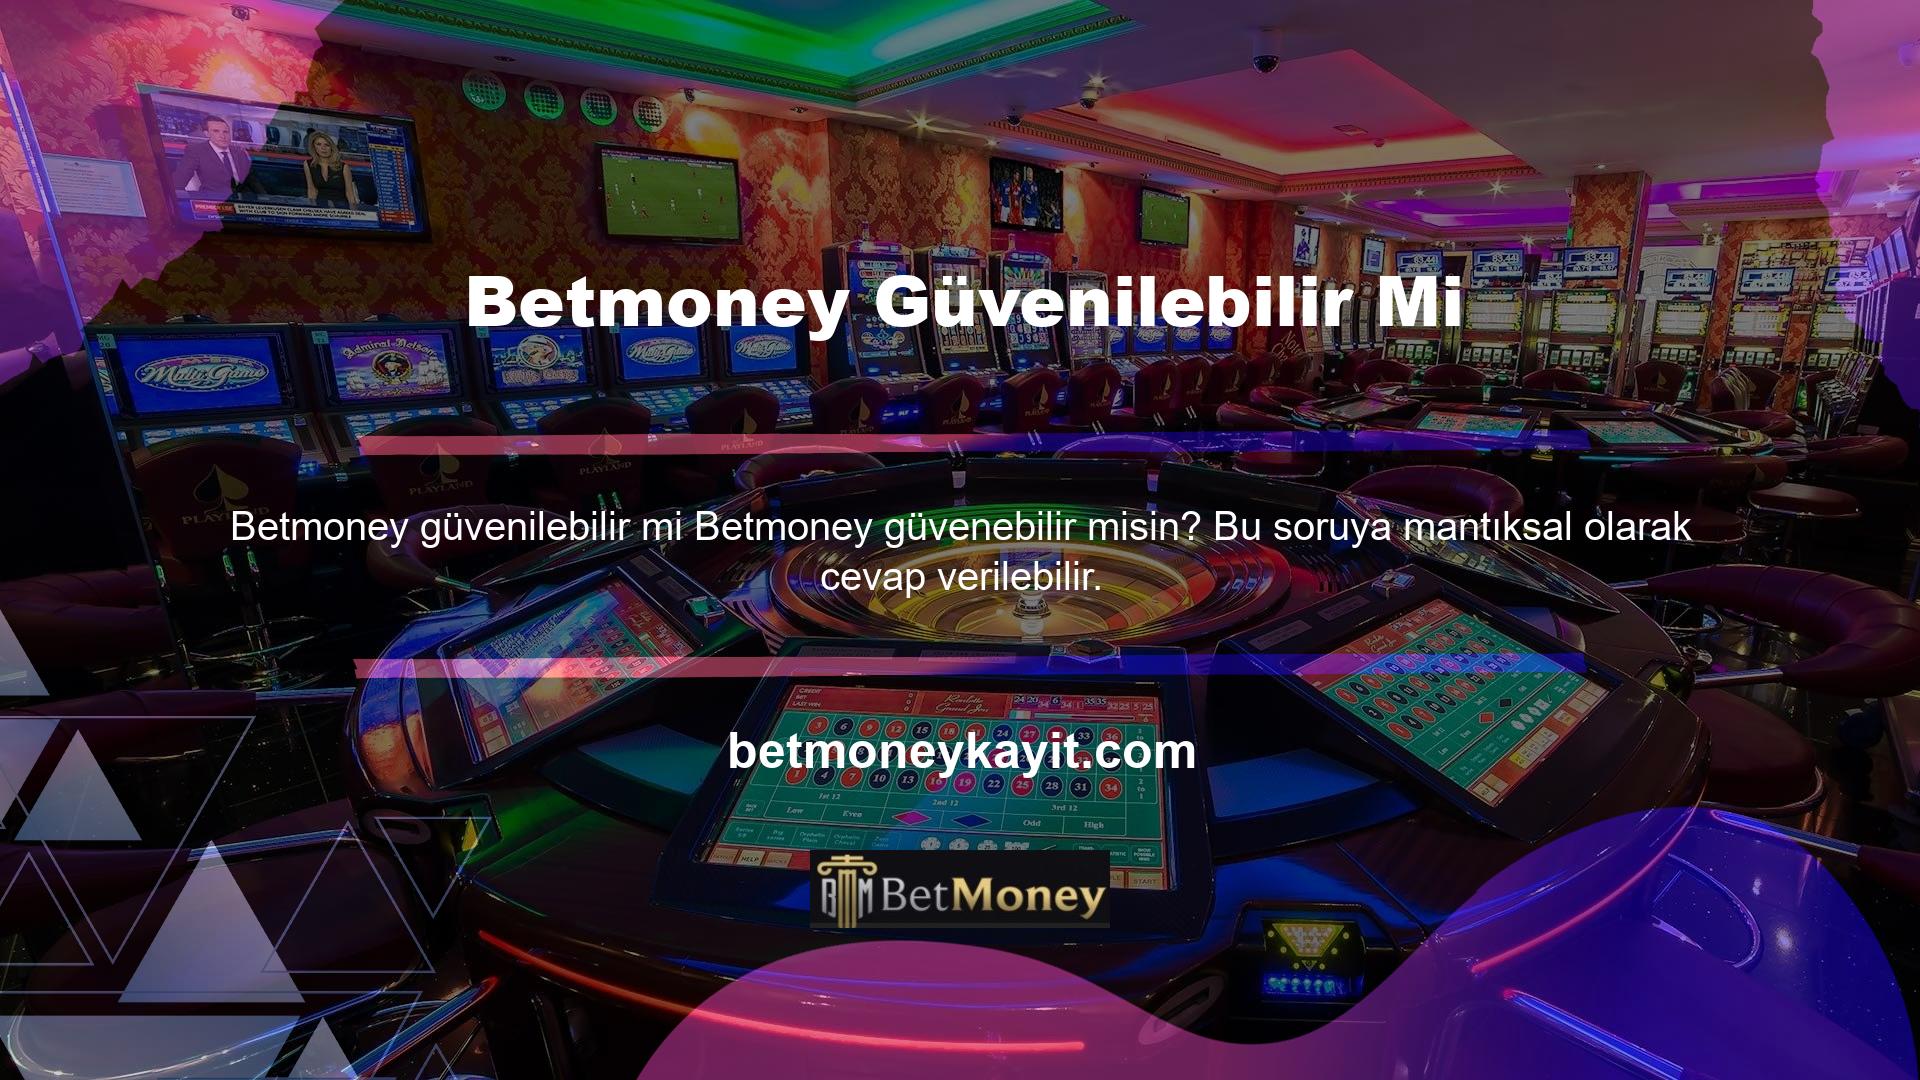 Yurtdışındaki casino sitelerinin güvenilirliğine veya Betmoney hangi sitelere güvendiğine bakılmaksızın aboneliğimi neden iptal etti? Aşağıdaki soruları kendinize sorun ve yanıtlar için web sitesinde arama yapın